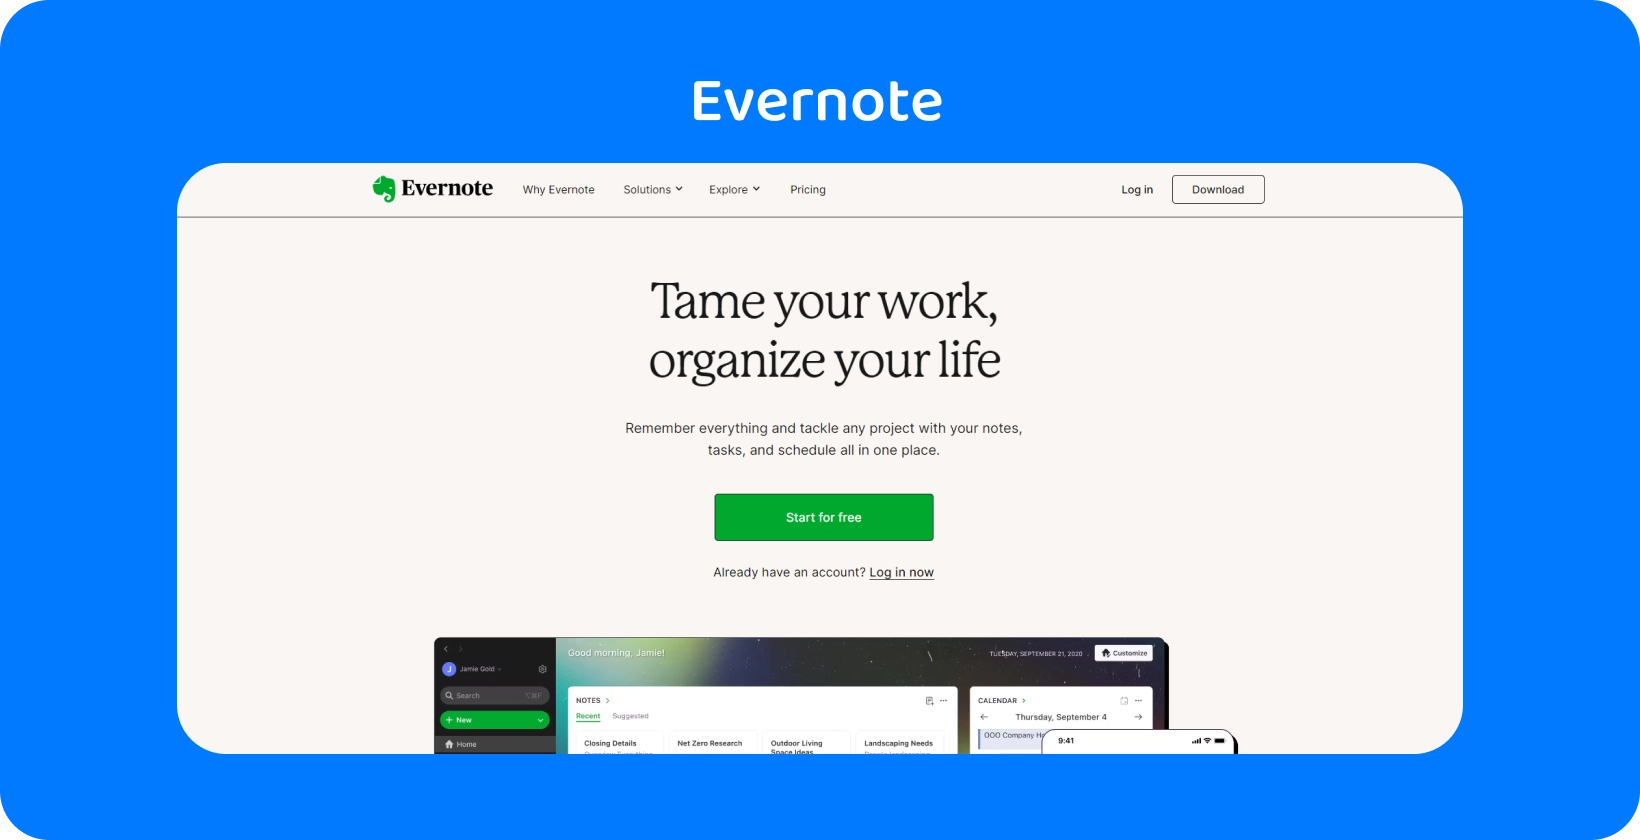 Strona główna Evernote z funkcjami organizacji, podobnie jak transkrypcja spotkań dla prawników w naszej aplikacji.